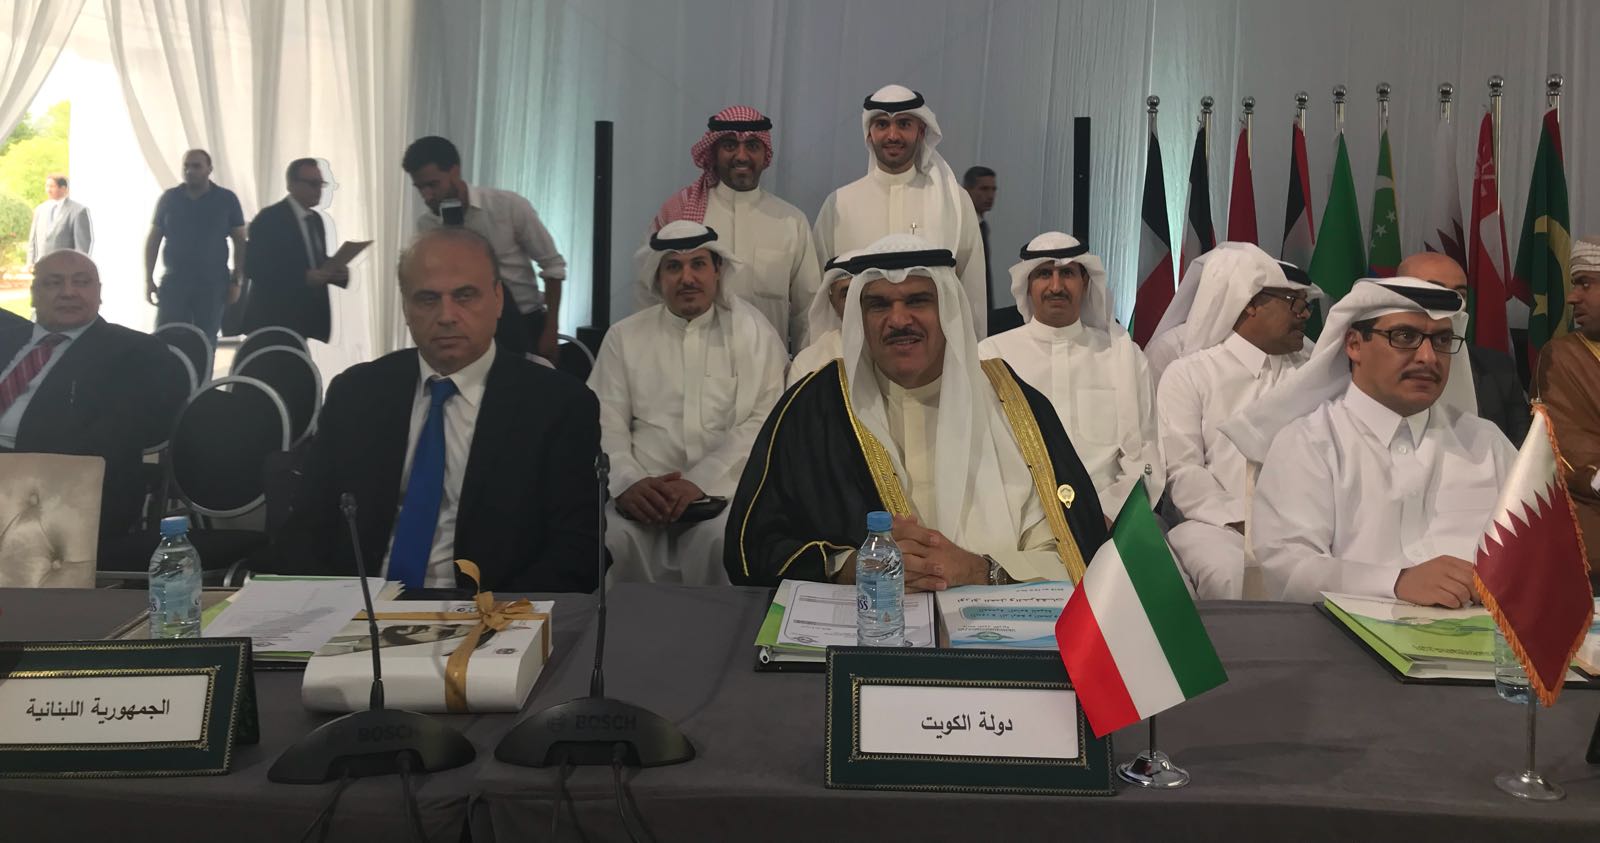 الكويت تتسلم رئاسة الهيئة العربية للطيران المدني